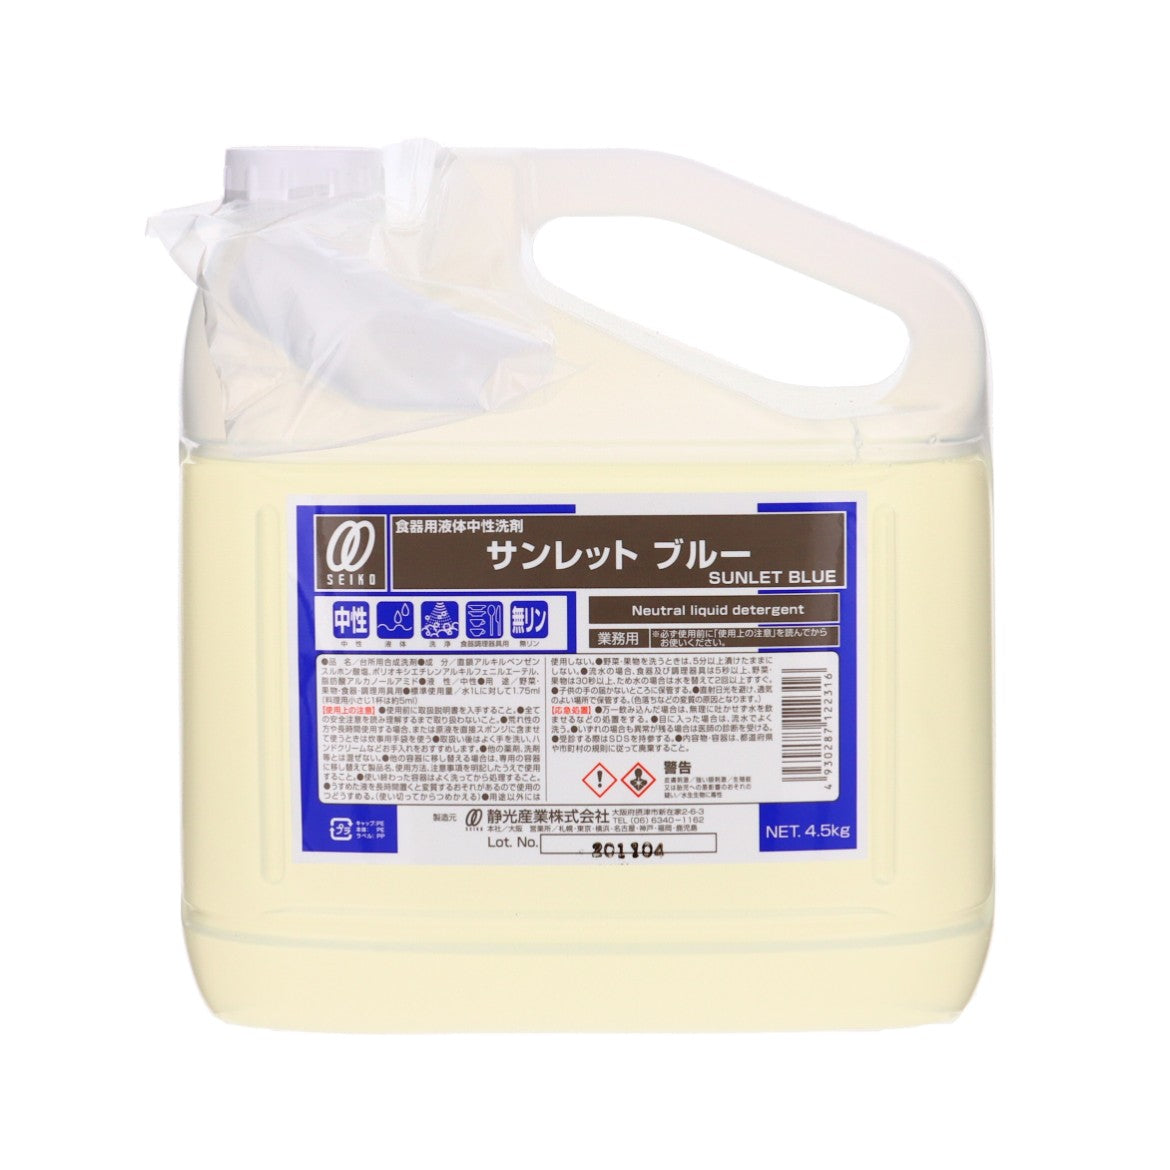 【中性洗剤】静光産業 サンレット ブルー 4.5kg